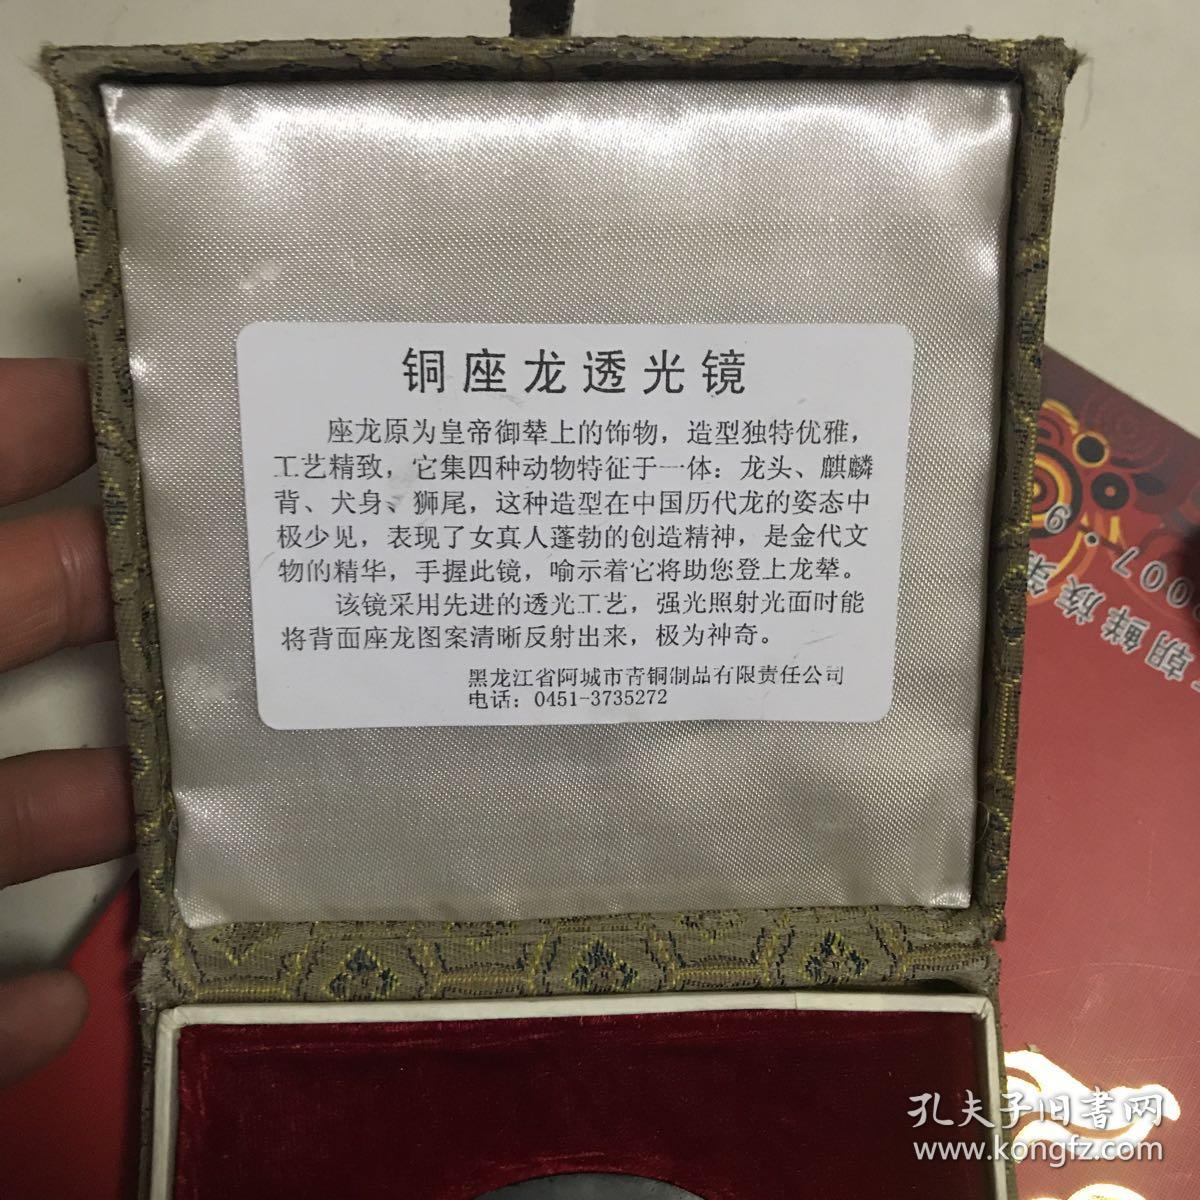 中国 阿城 首届金源文化节  铜座龙透光镜   锦盒装！